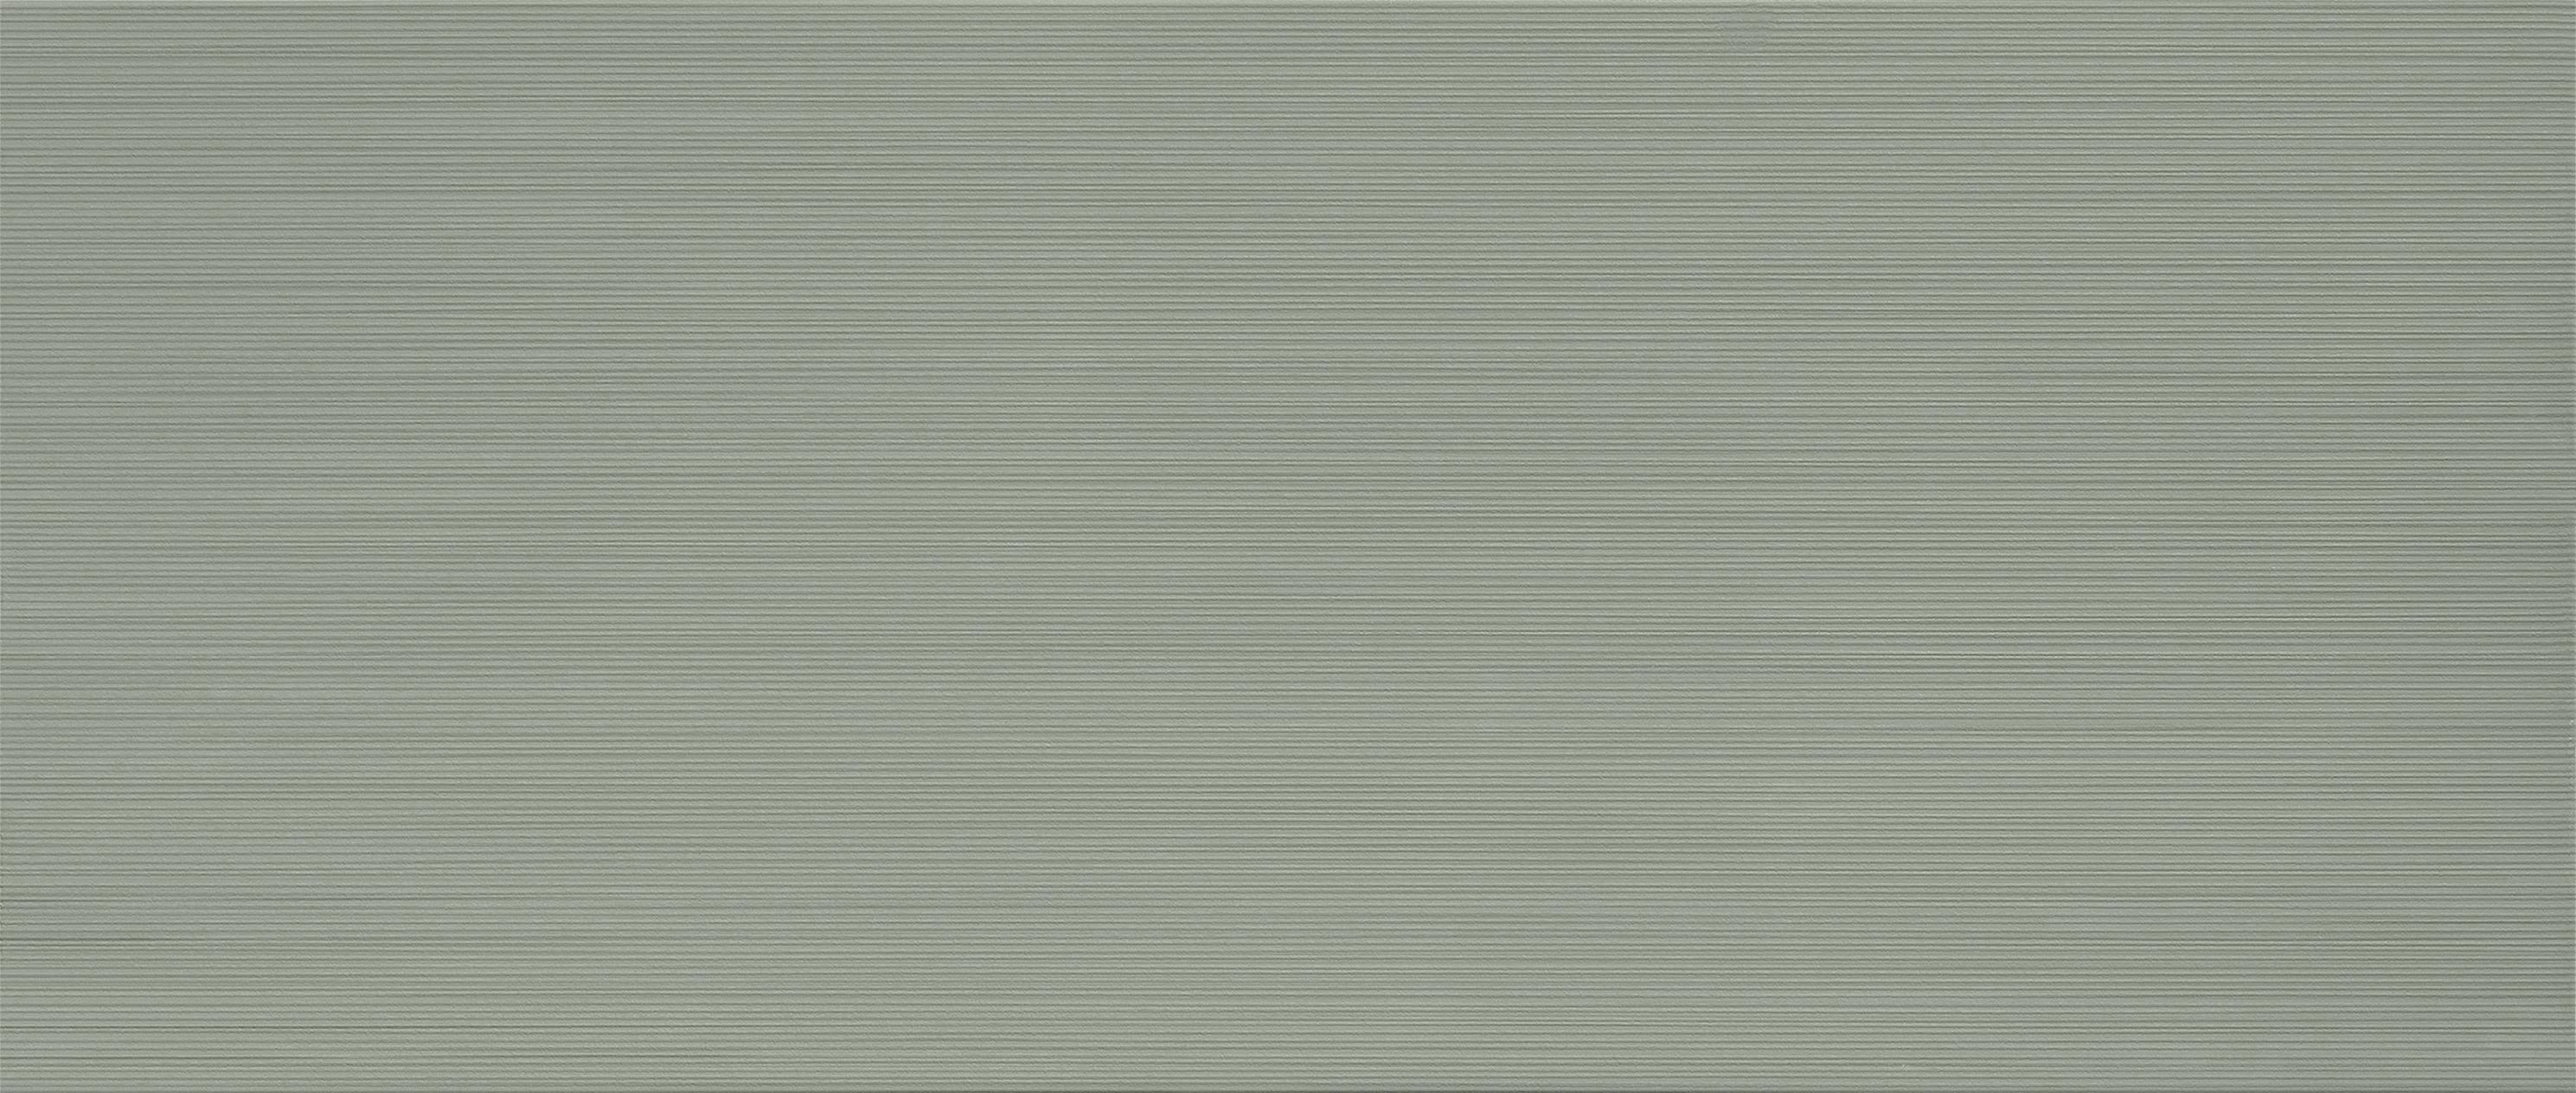 faience-atlas-aplomb-50x120r-1-80m2-paq-lichen-stripes-a6im-0